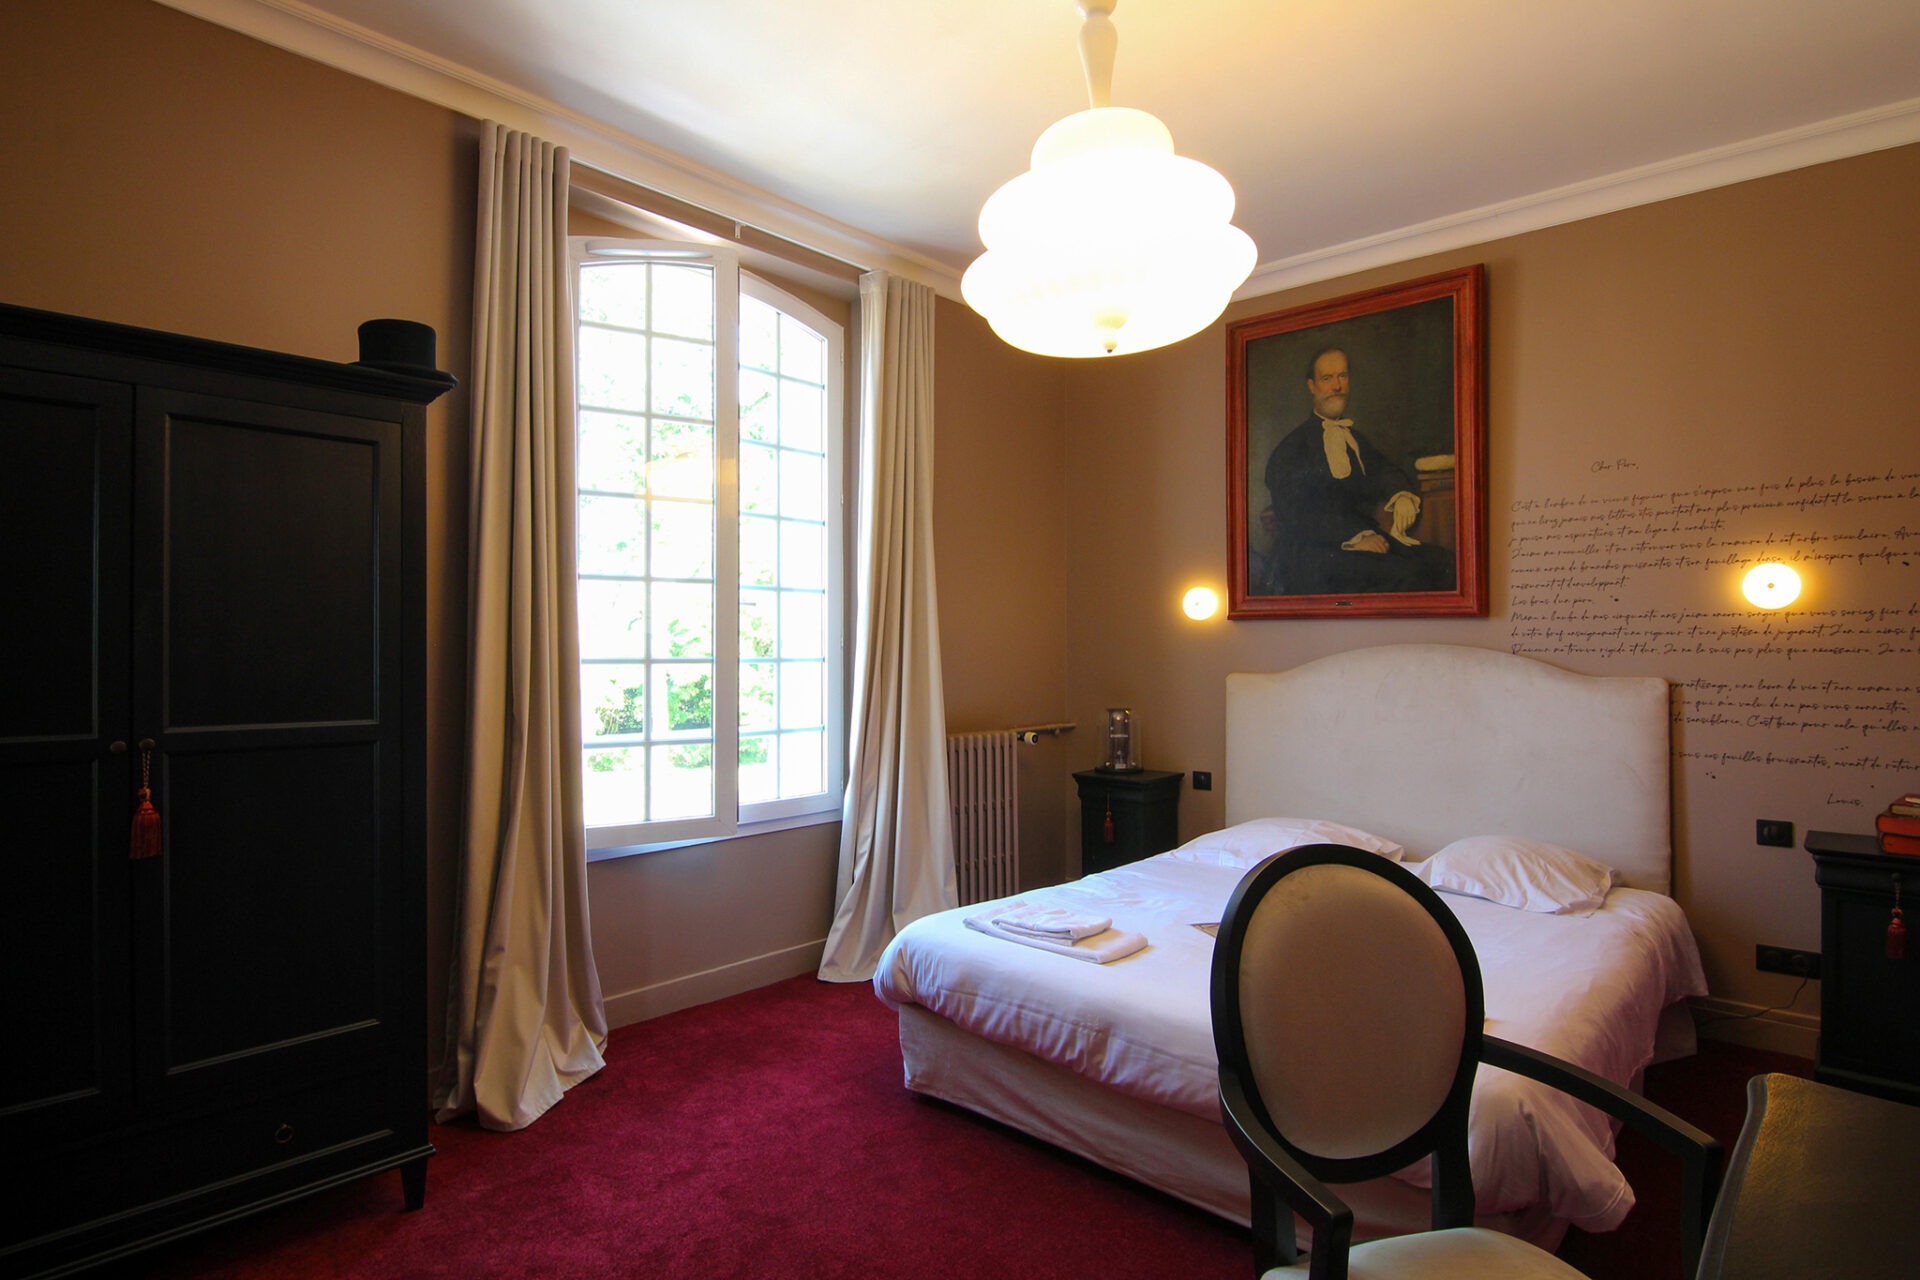 A la recherche d'un gite, d'une auberge, d'un hotel, l'hostellerie du château du Bois Guibert vous accueille. De nombreux chapitres se sont inscris à travers nos murs...entre histoire et modernité. Découvrez le Chapitre 6 - Chambre luxe & confort !